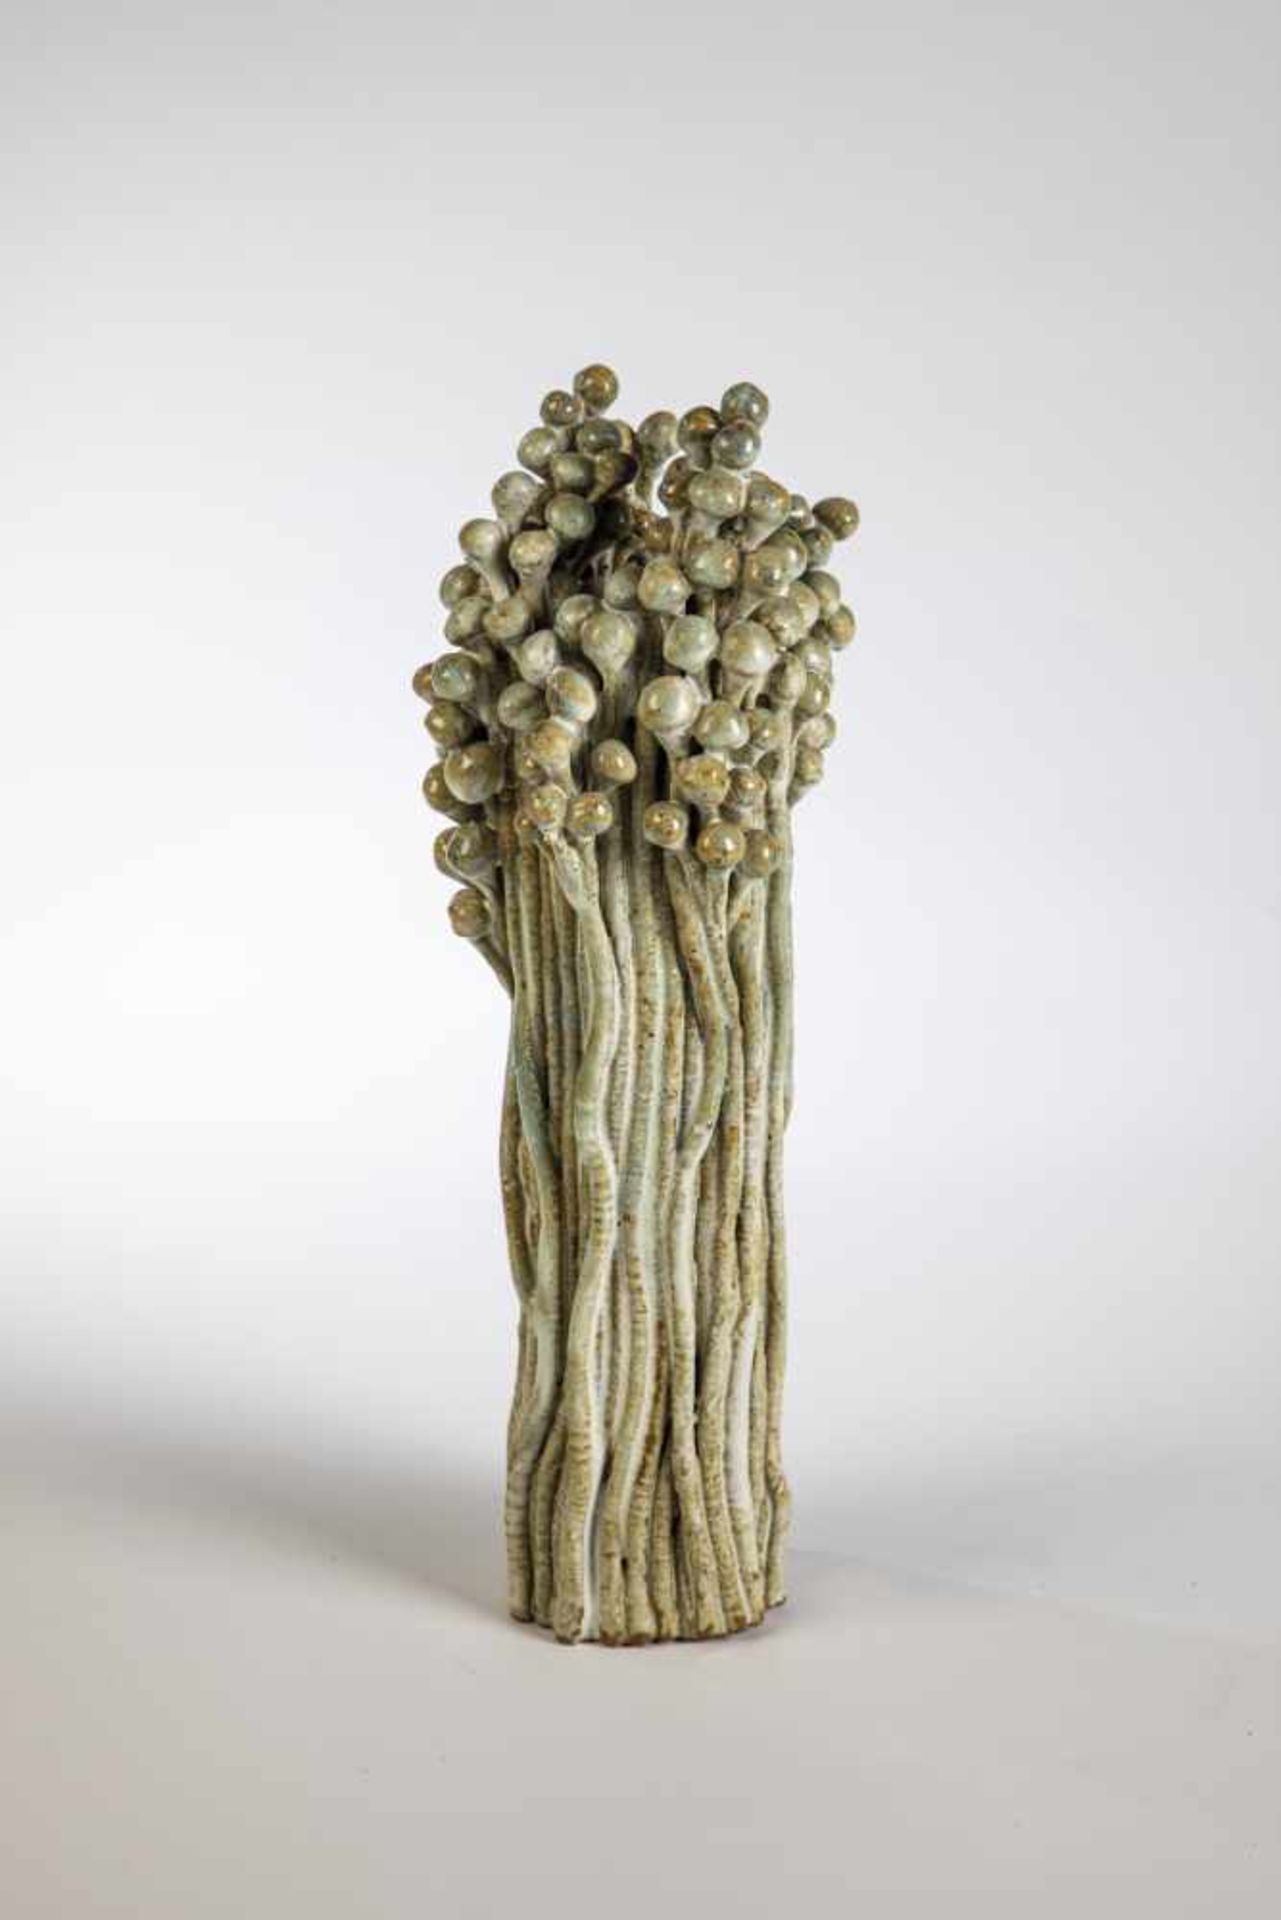 PlastikUnbekannte(r) Keramikkünstler(in) Zweige mit Beerenrispen, zu einem Bündel zusammengefaßt.